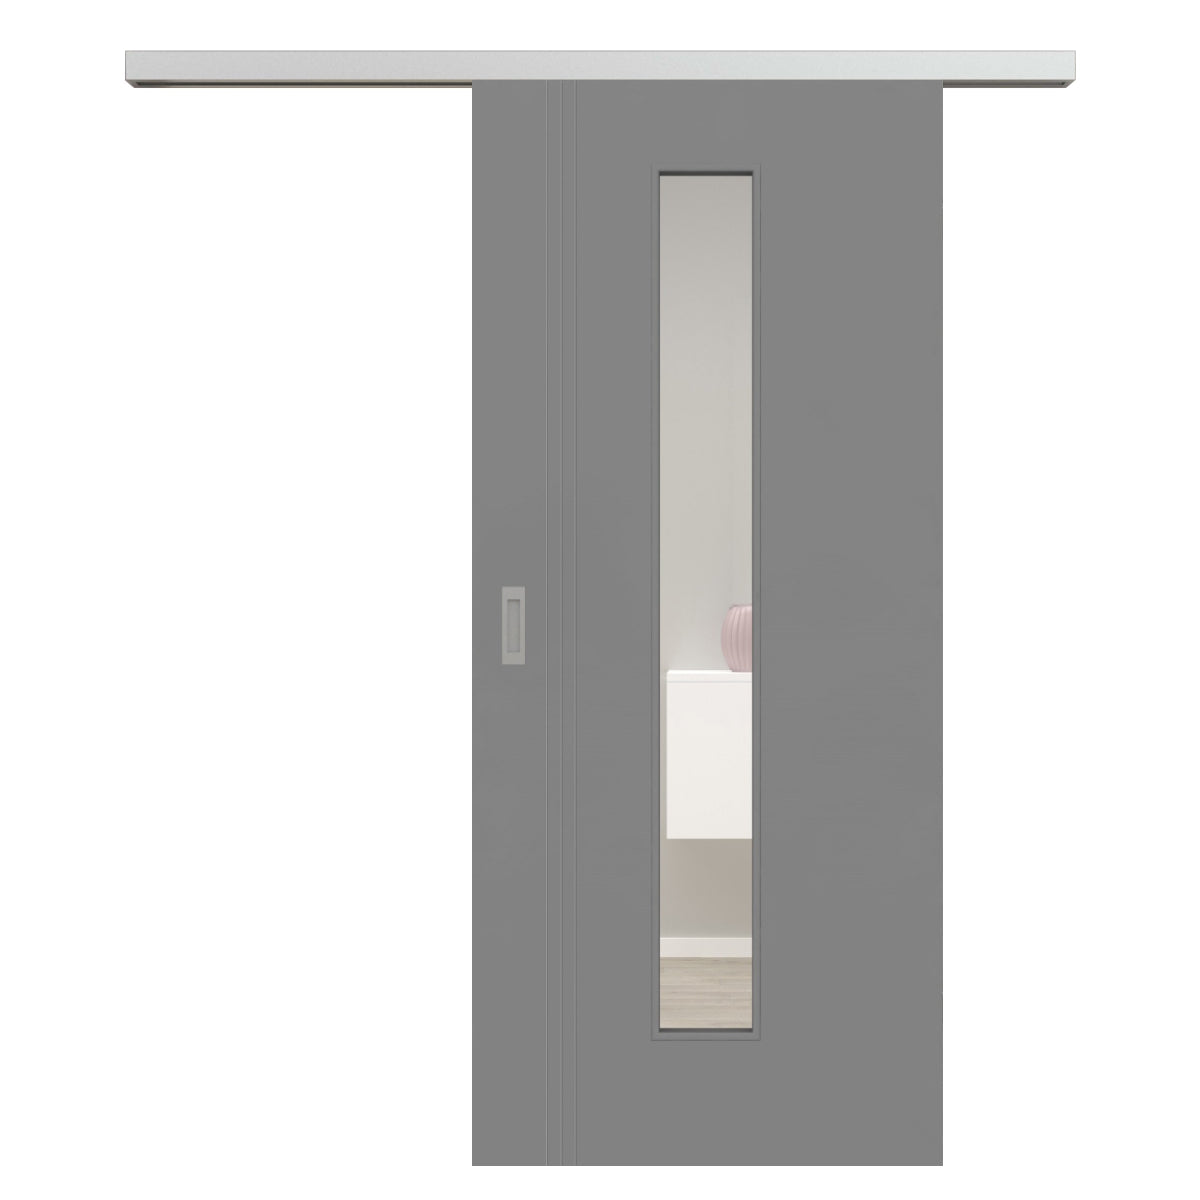 Schiebetür für Set mit Edelstahllaufkasten mit Lichtausschnitt grau 3 Rillen aufrecht Schlosseite - Modell Designtür VS37LAM